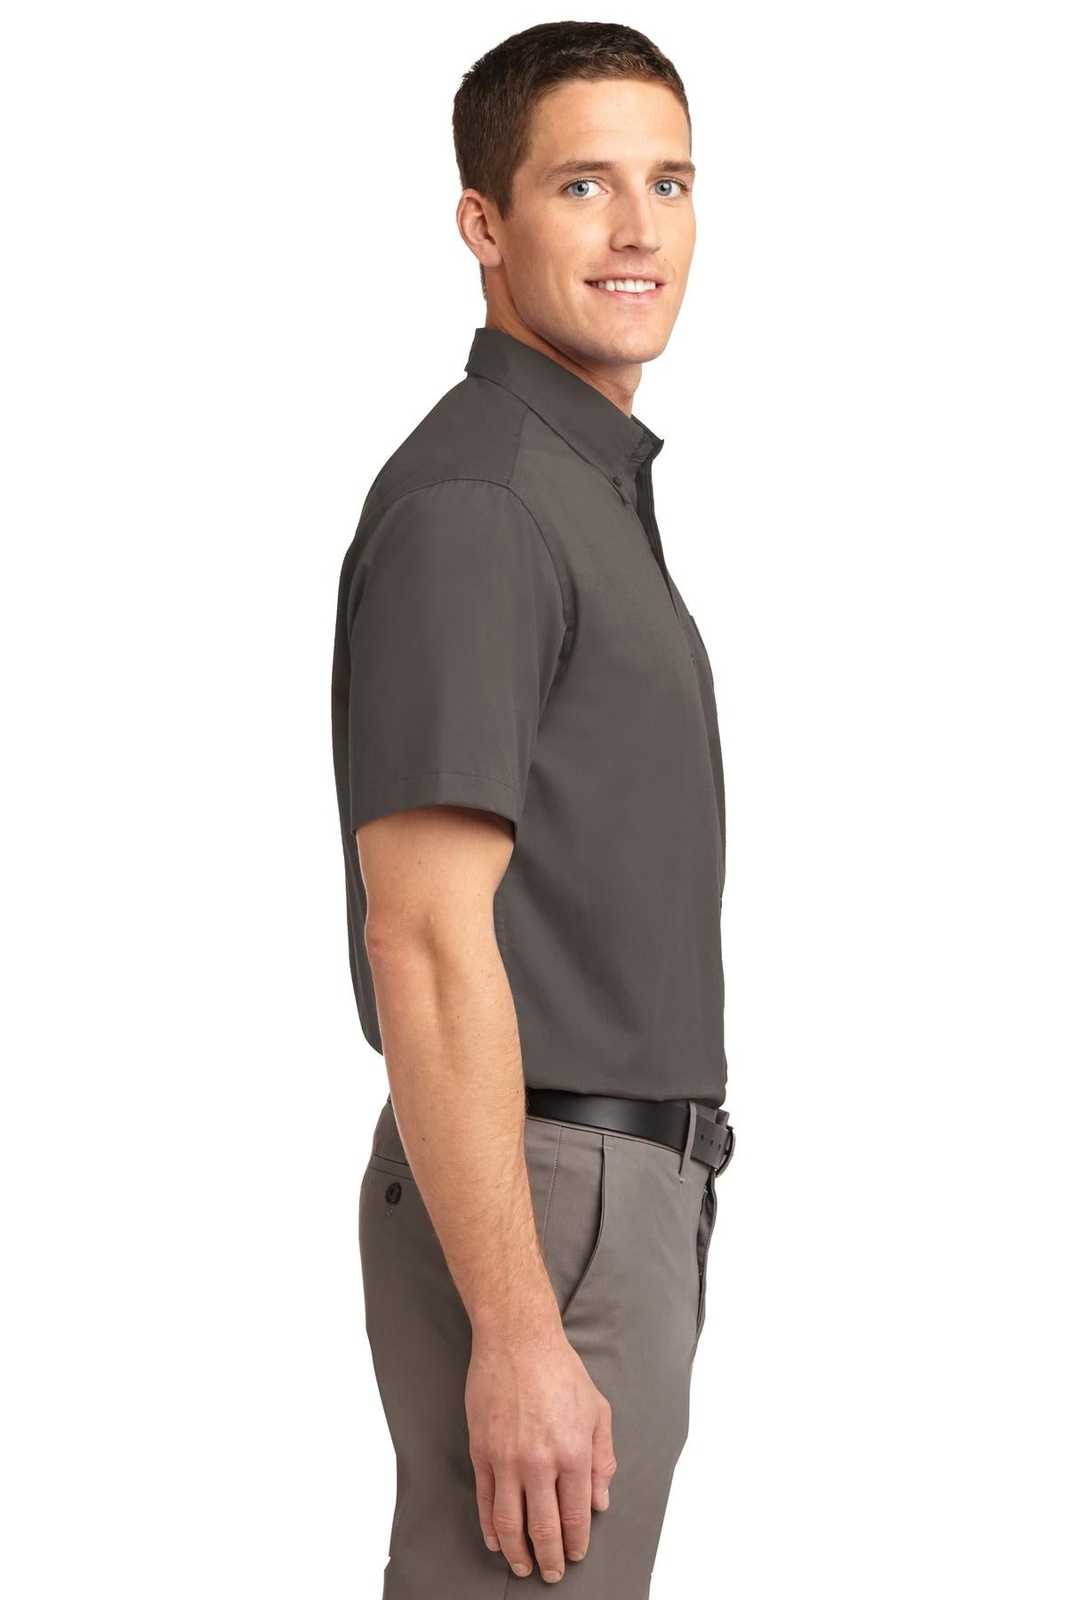 Port Authority S508 Short Sleeve Easy Care Shirt - Bark - HIT a Double - 3